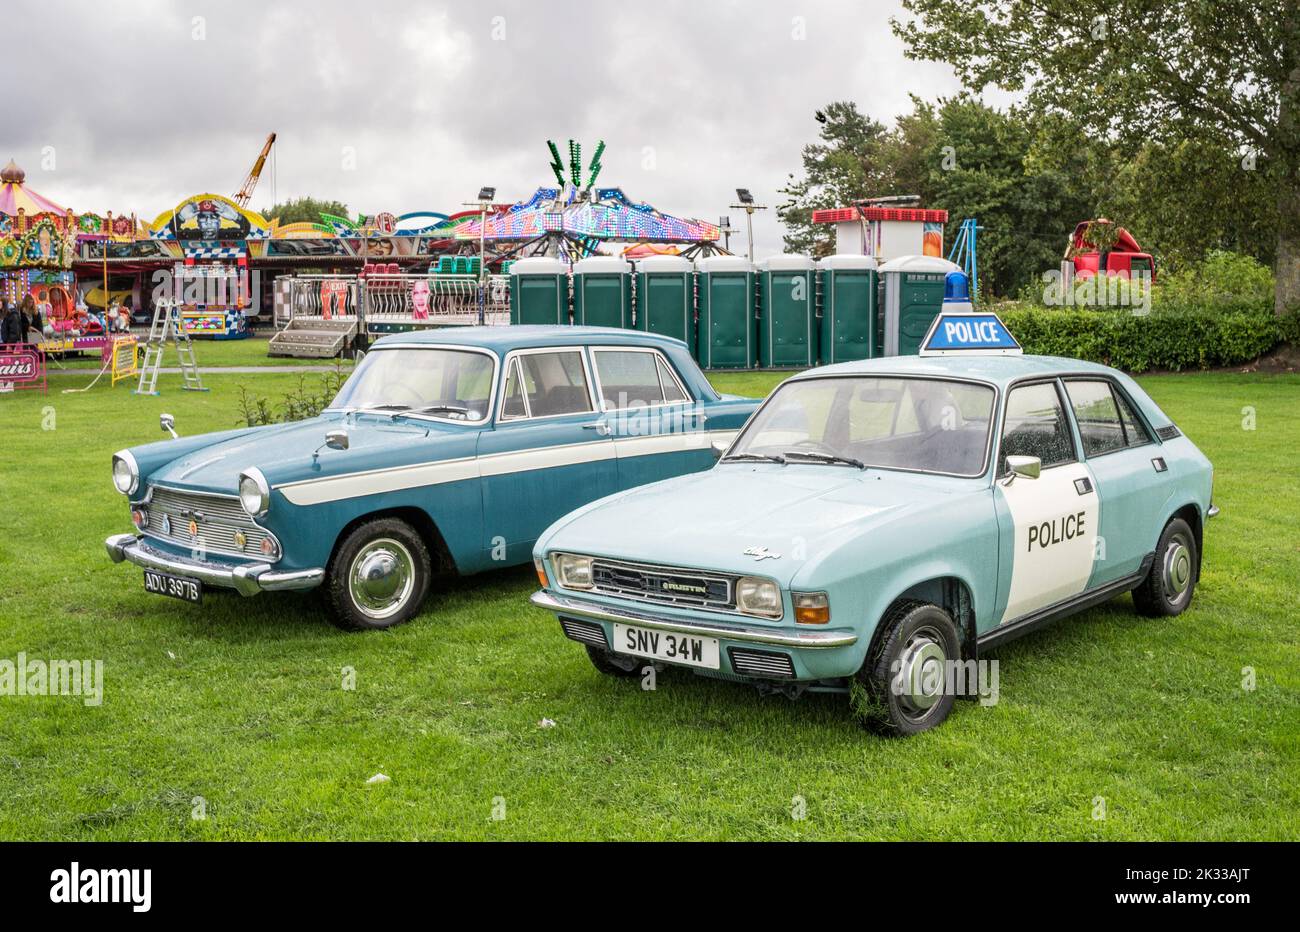 Ein Polizeiauto von Austin Allegro und eine Limousine von Austin Cambridge bei Washington Carnival, Tyne and Wear, England, Großbritannien Stockfoto